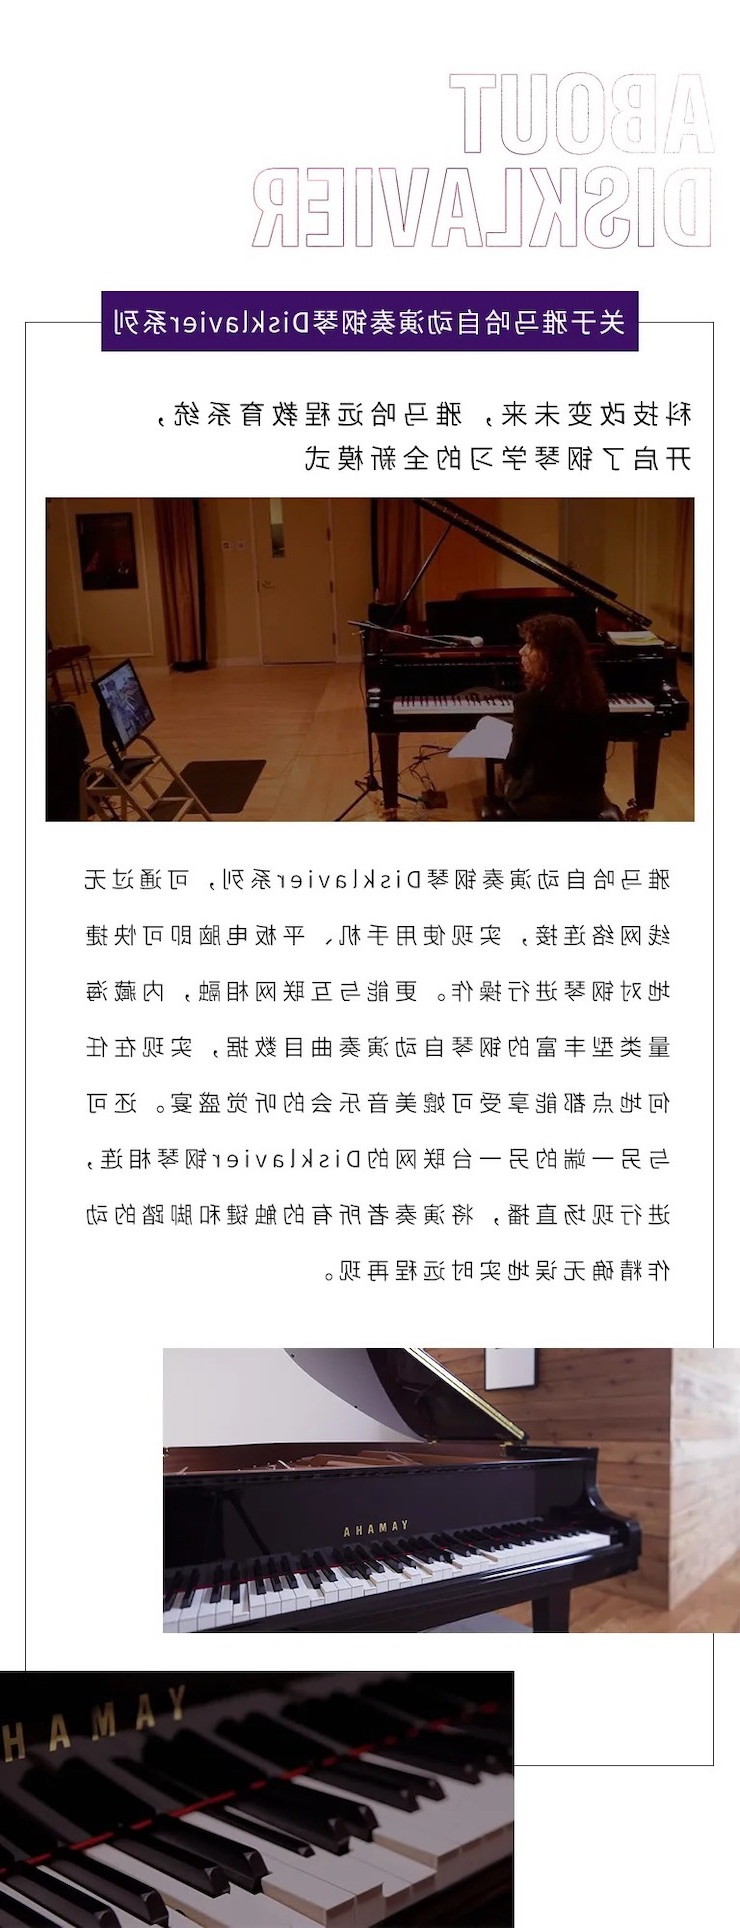 活动报道|酷游ku游登陆页
钢琴远程艺术节系列大师课收获满满！